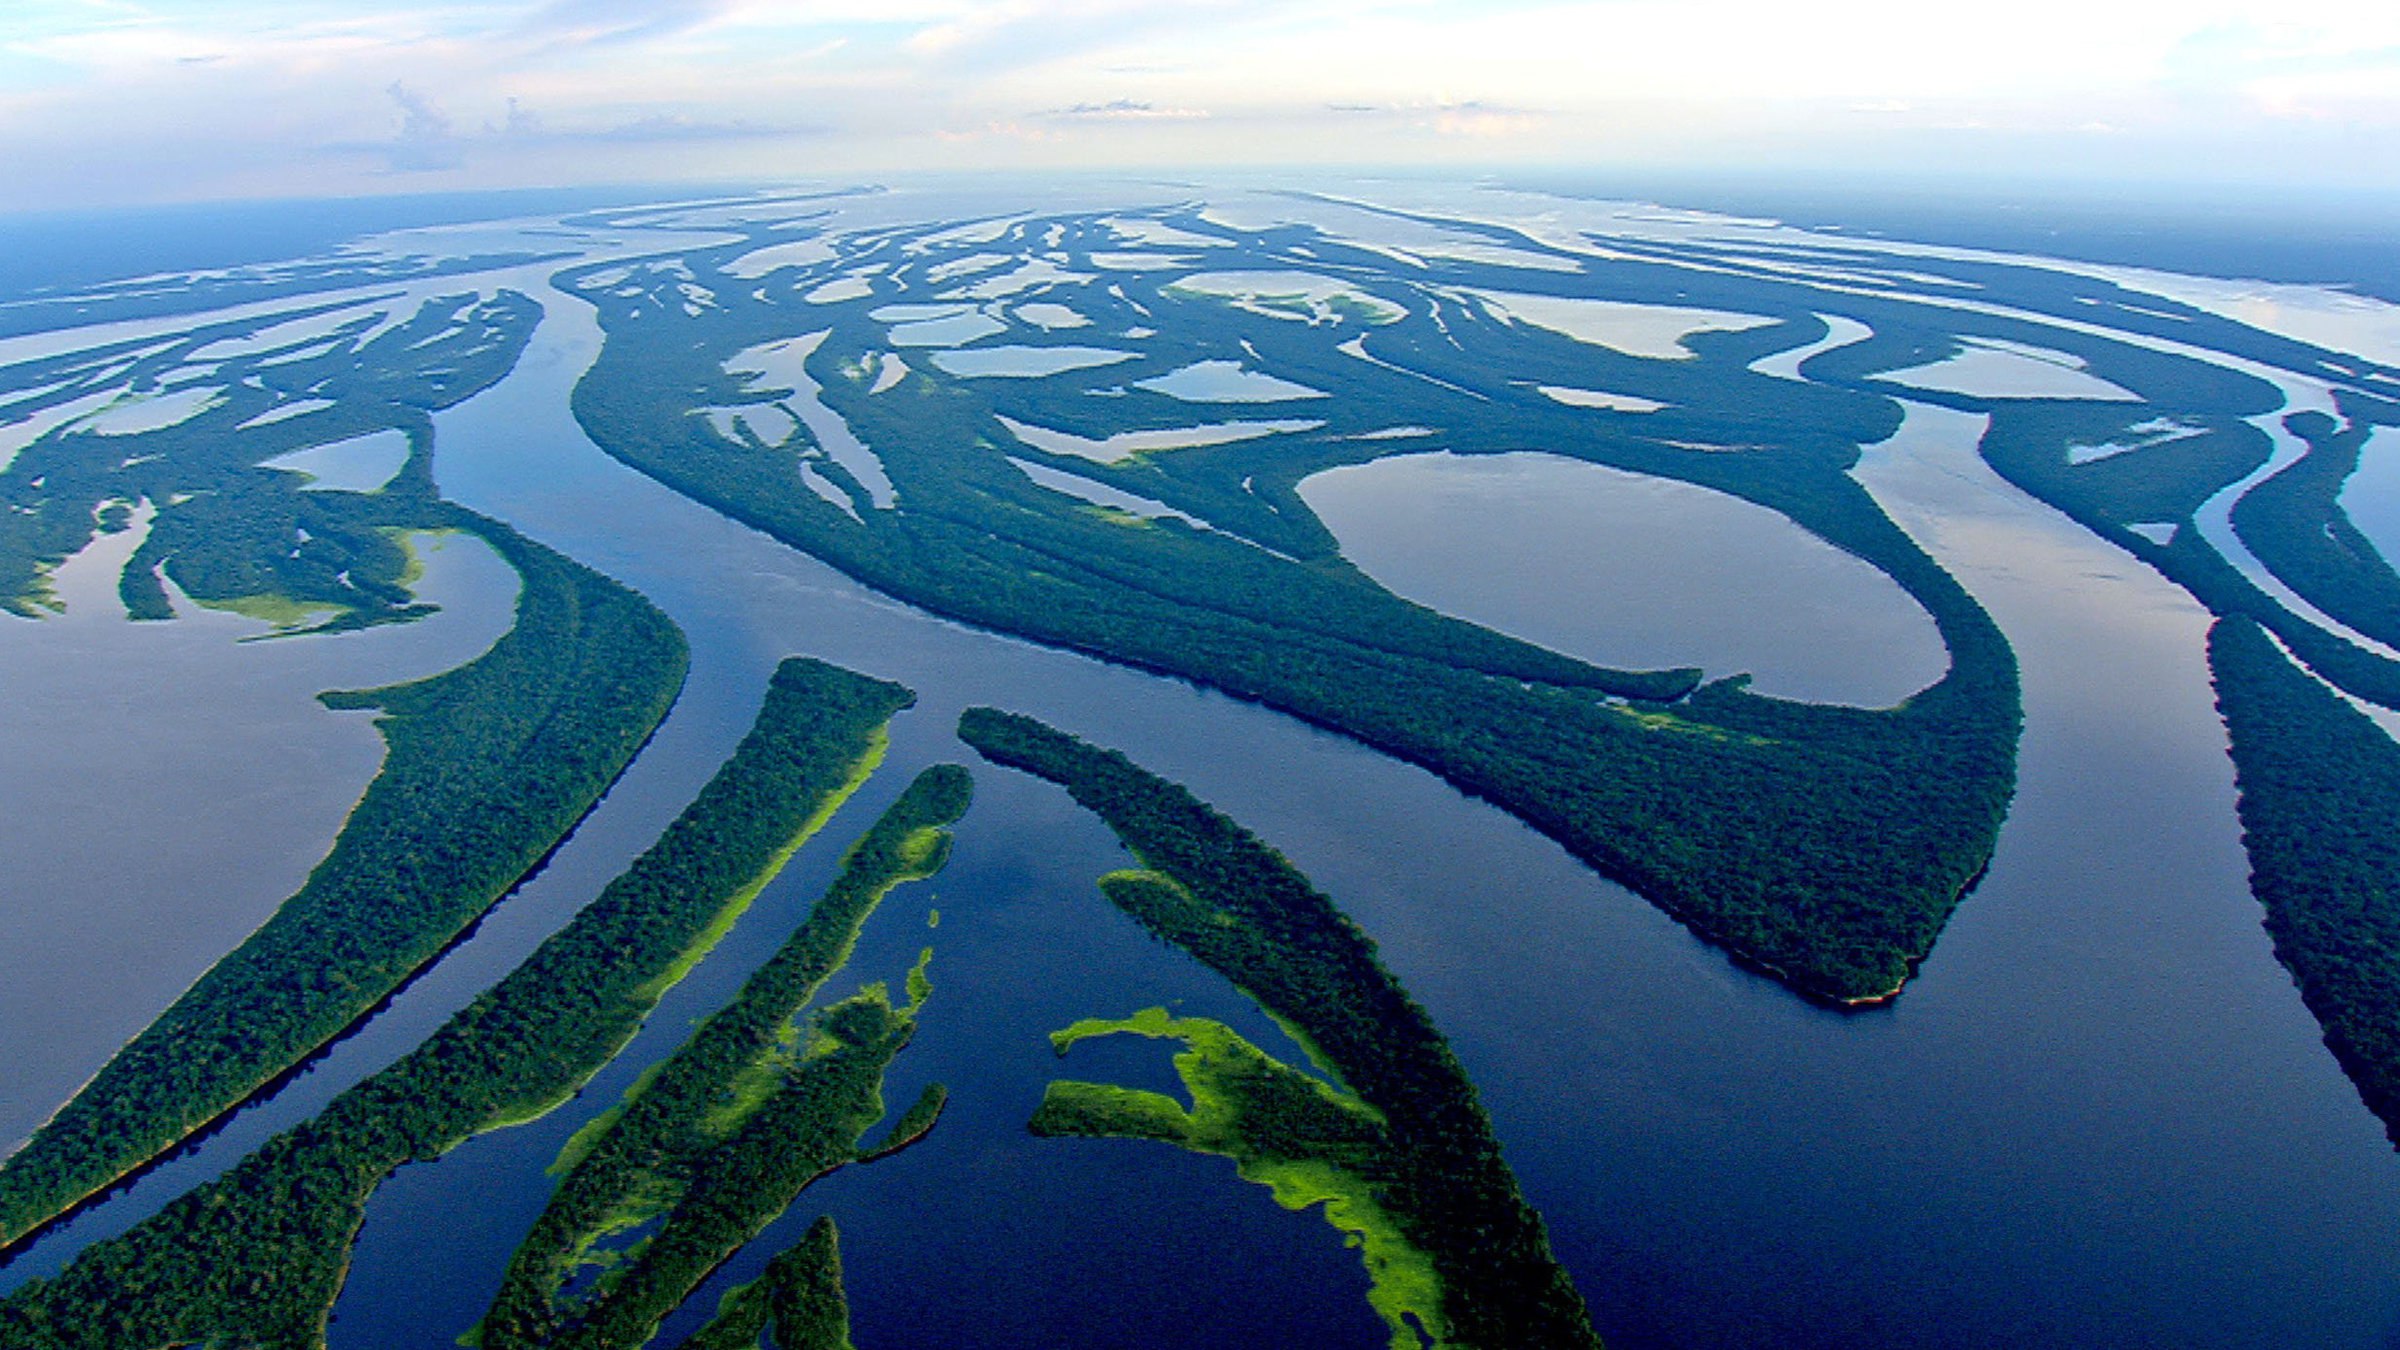 Амазонка полноводна круглый год. Амазонка река Укаяли. Миссисипи Амазонка Парана. Река Амазонка самая полноводная река в мире. Укаяли река в Южной Америке.